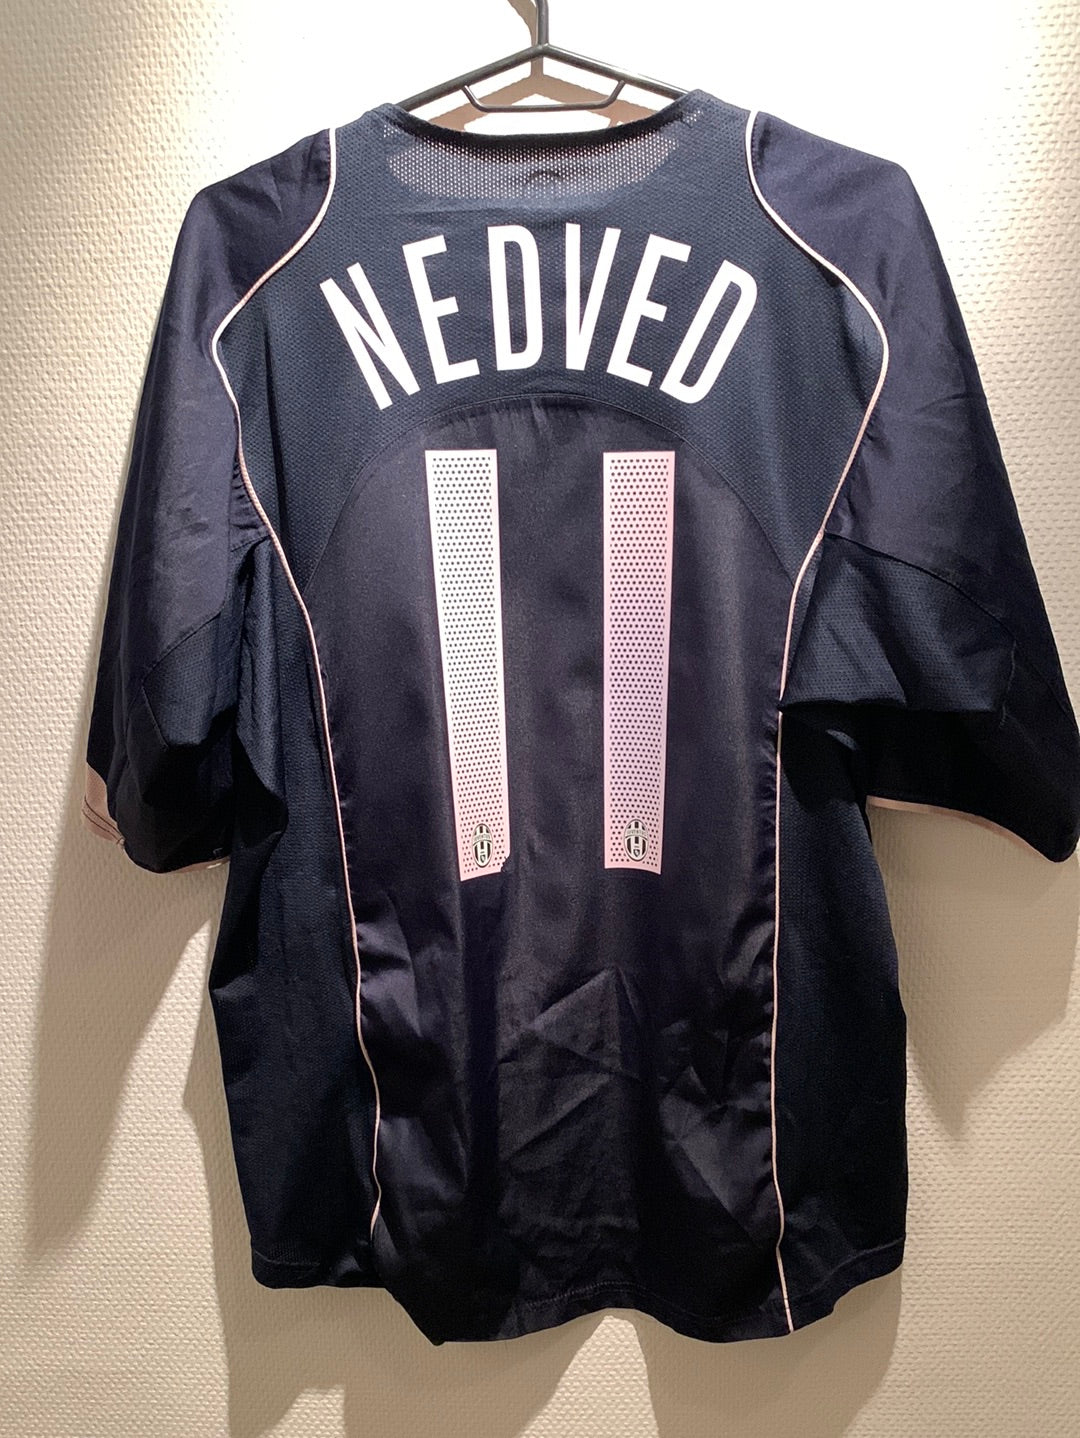 Juventus 3rd 04/05 Nedved 11